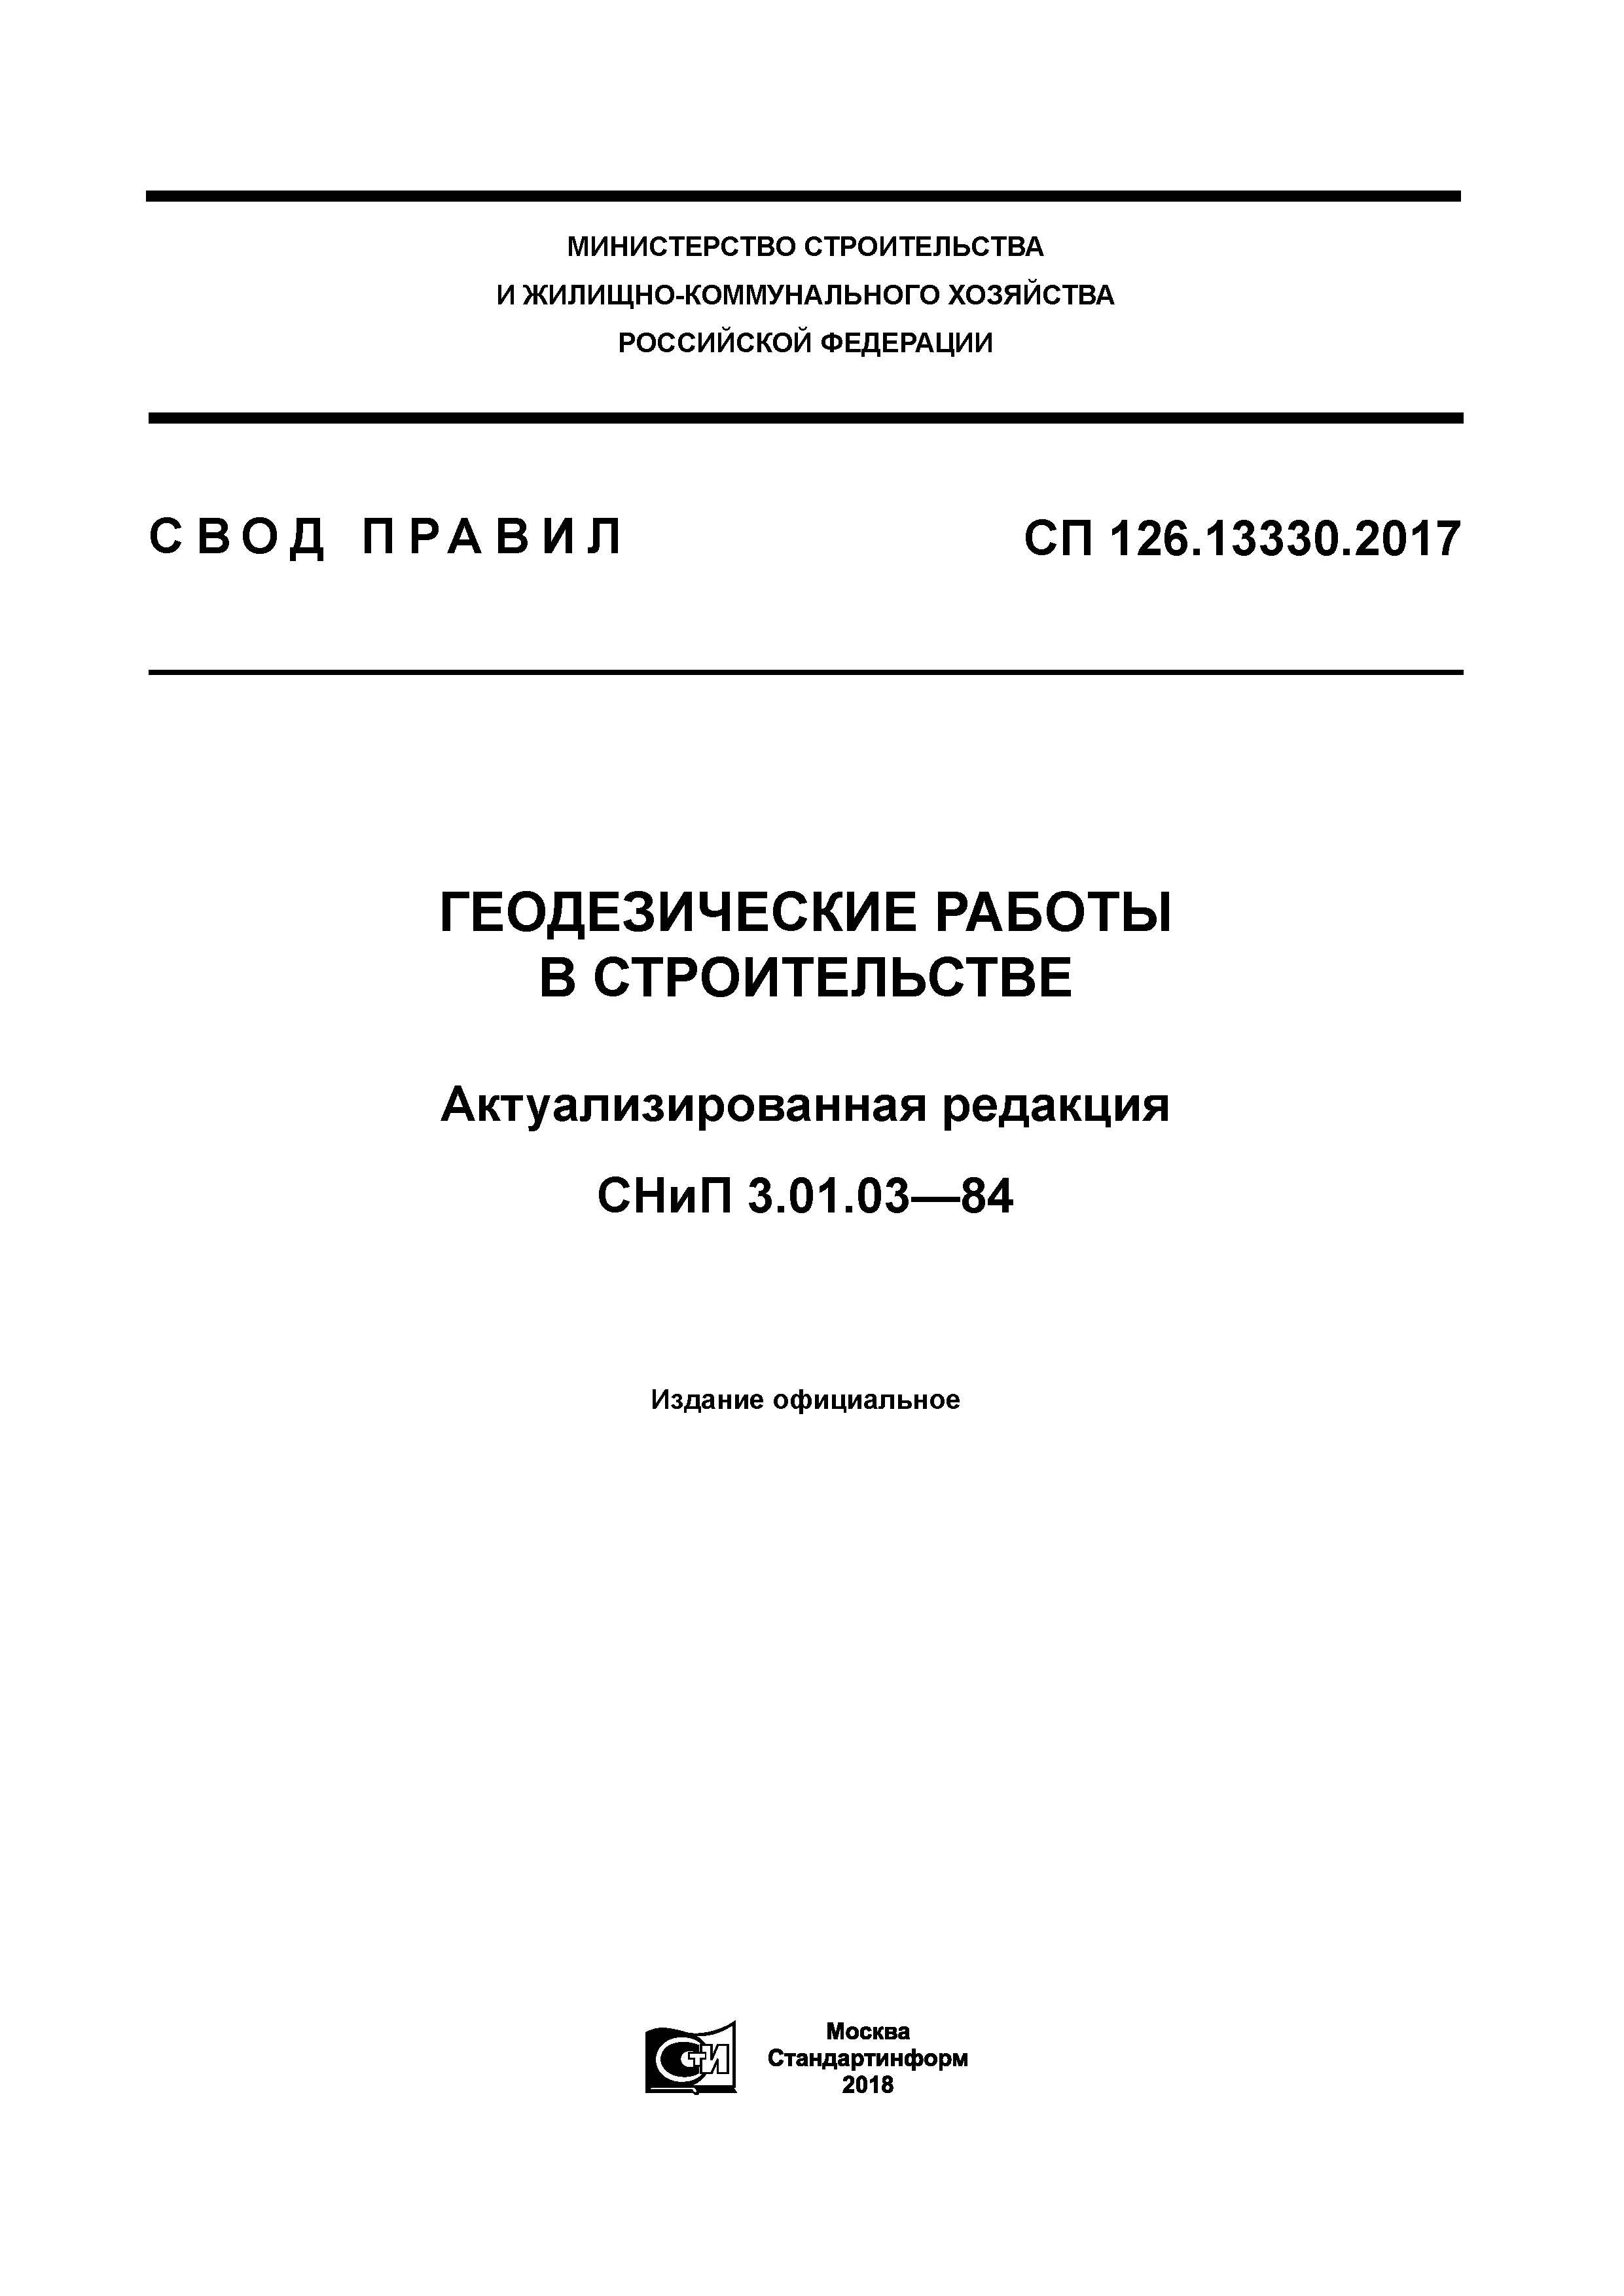 СП 126.13330.2017